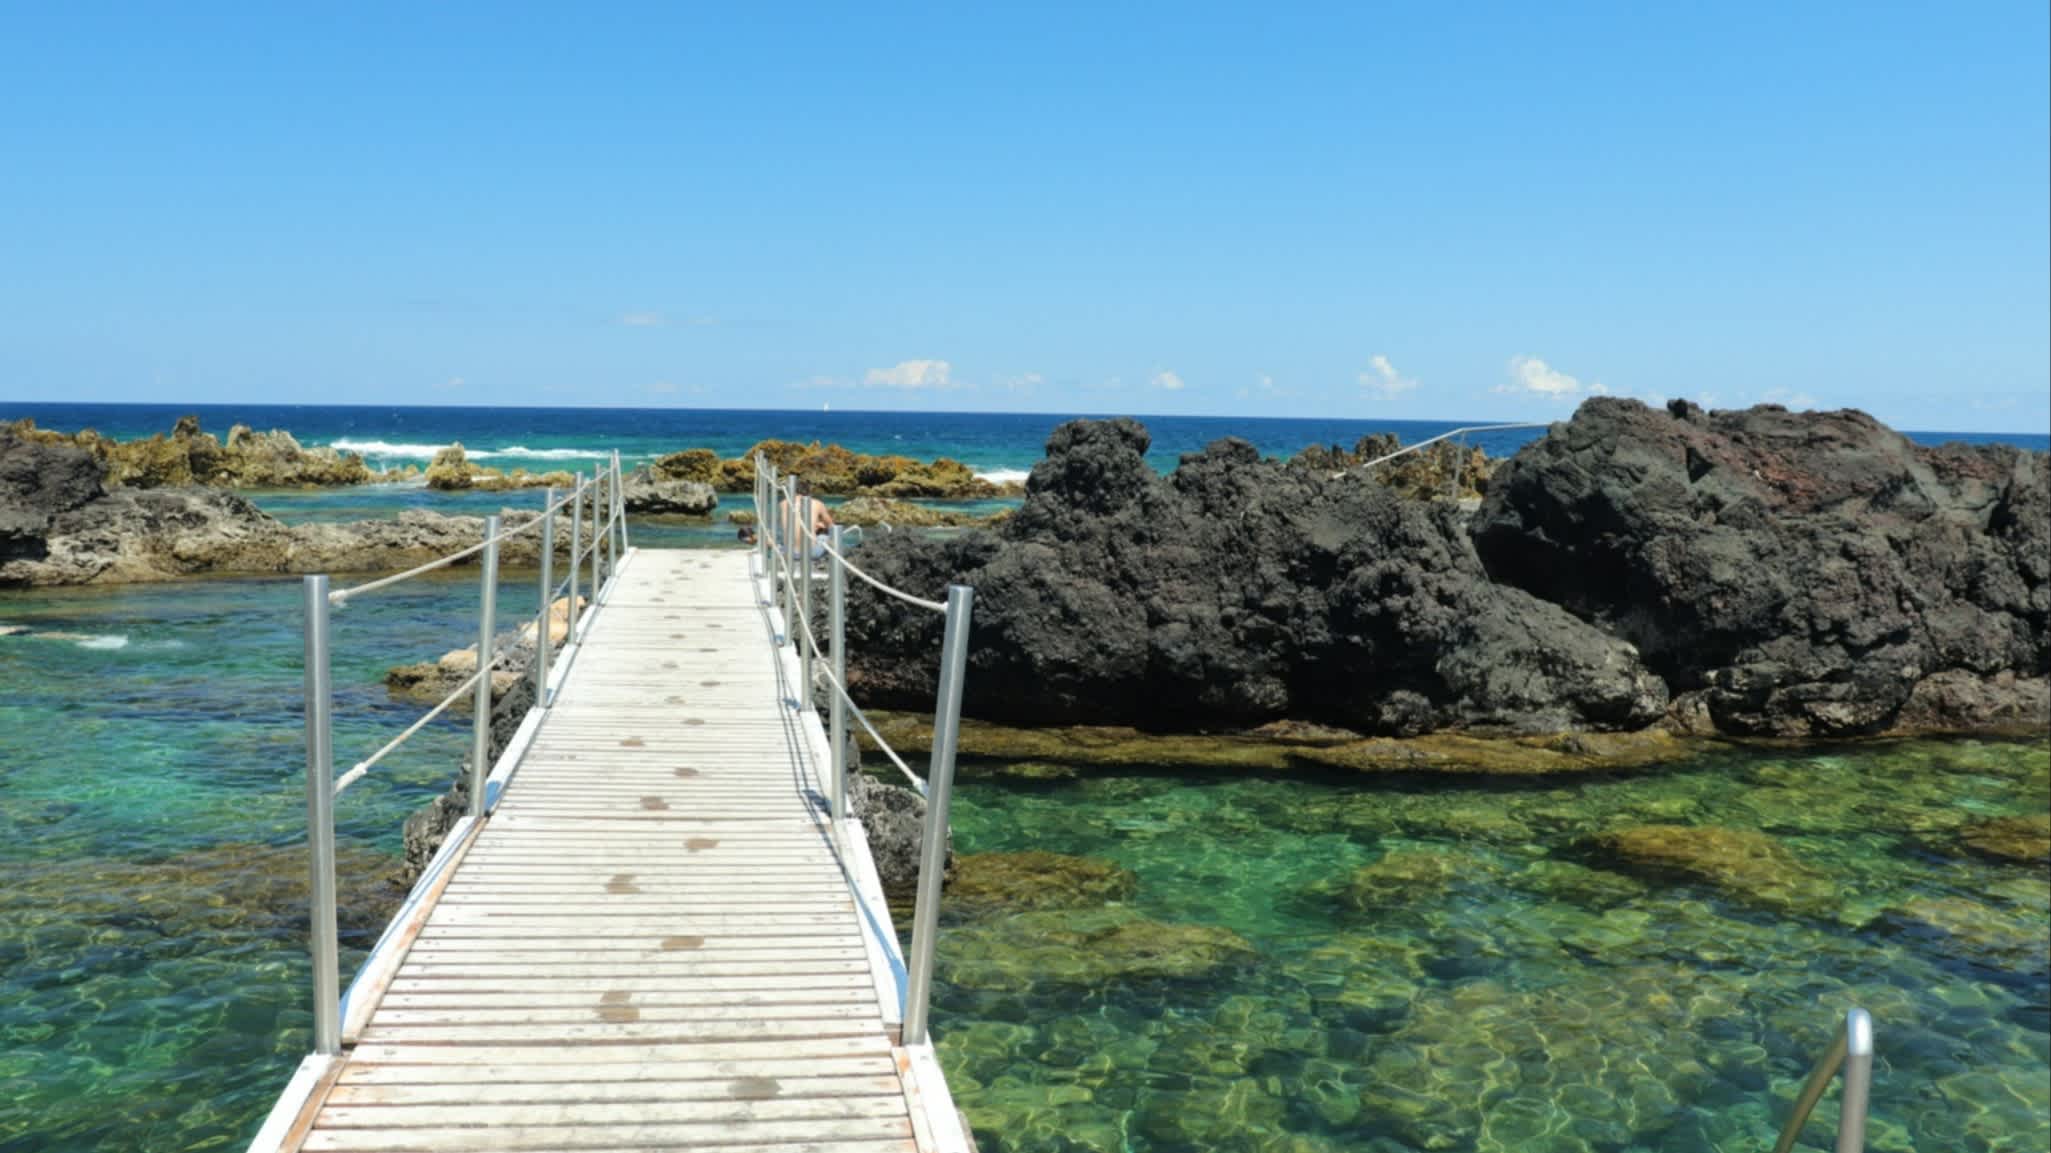 Natürliche Schwimmbecken in Biscoitos auf der Insel Terceira, Azores, Portugal mit einer Fußgänger-Brücke im Bild.
